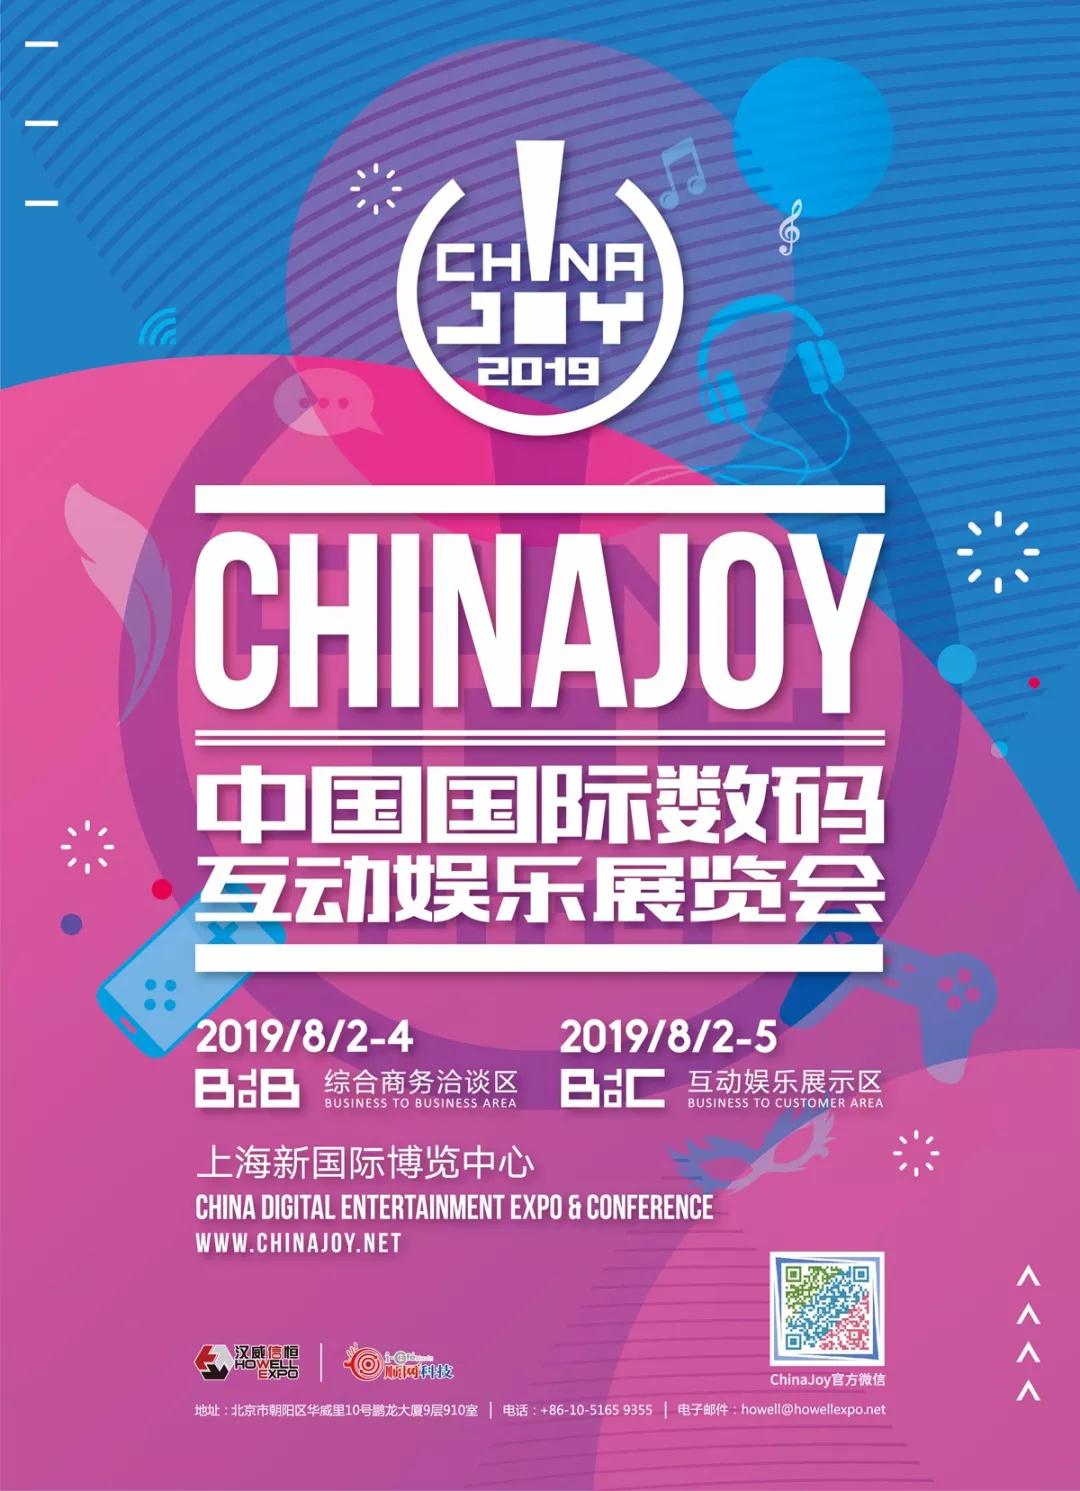 一键钱来！Worldpay正式确认参展2019 ChinaJoy BTOB